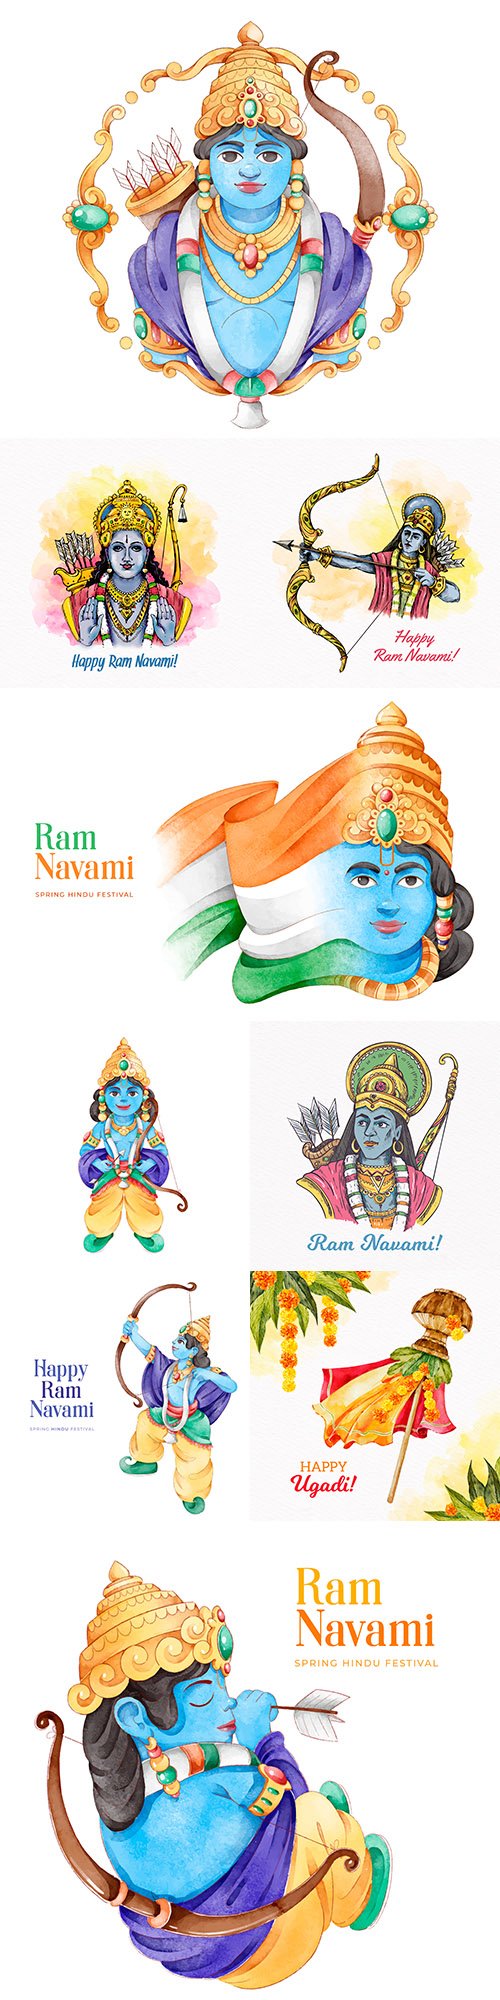 Ram Navami festival in flat watercolor design